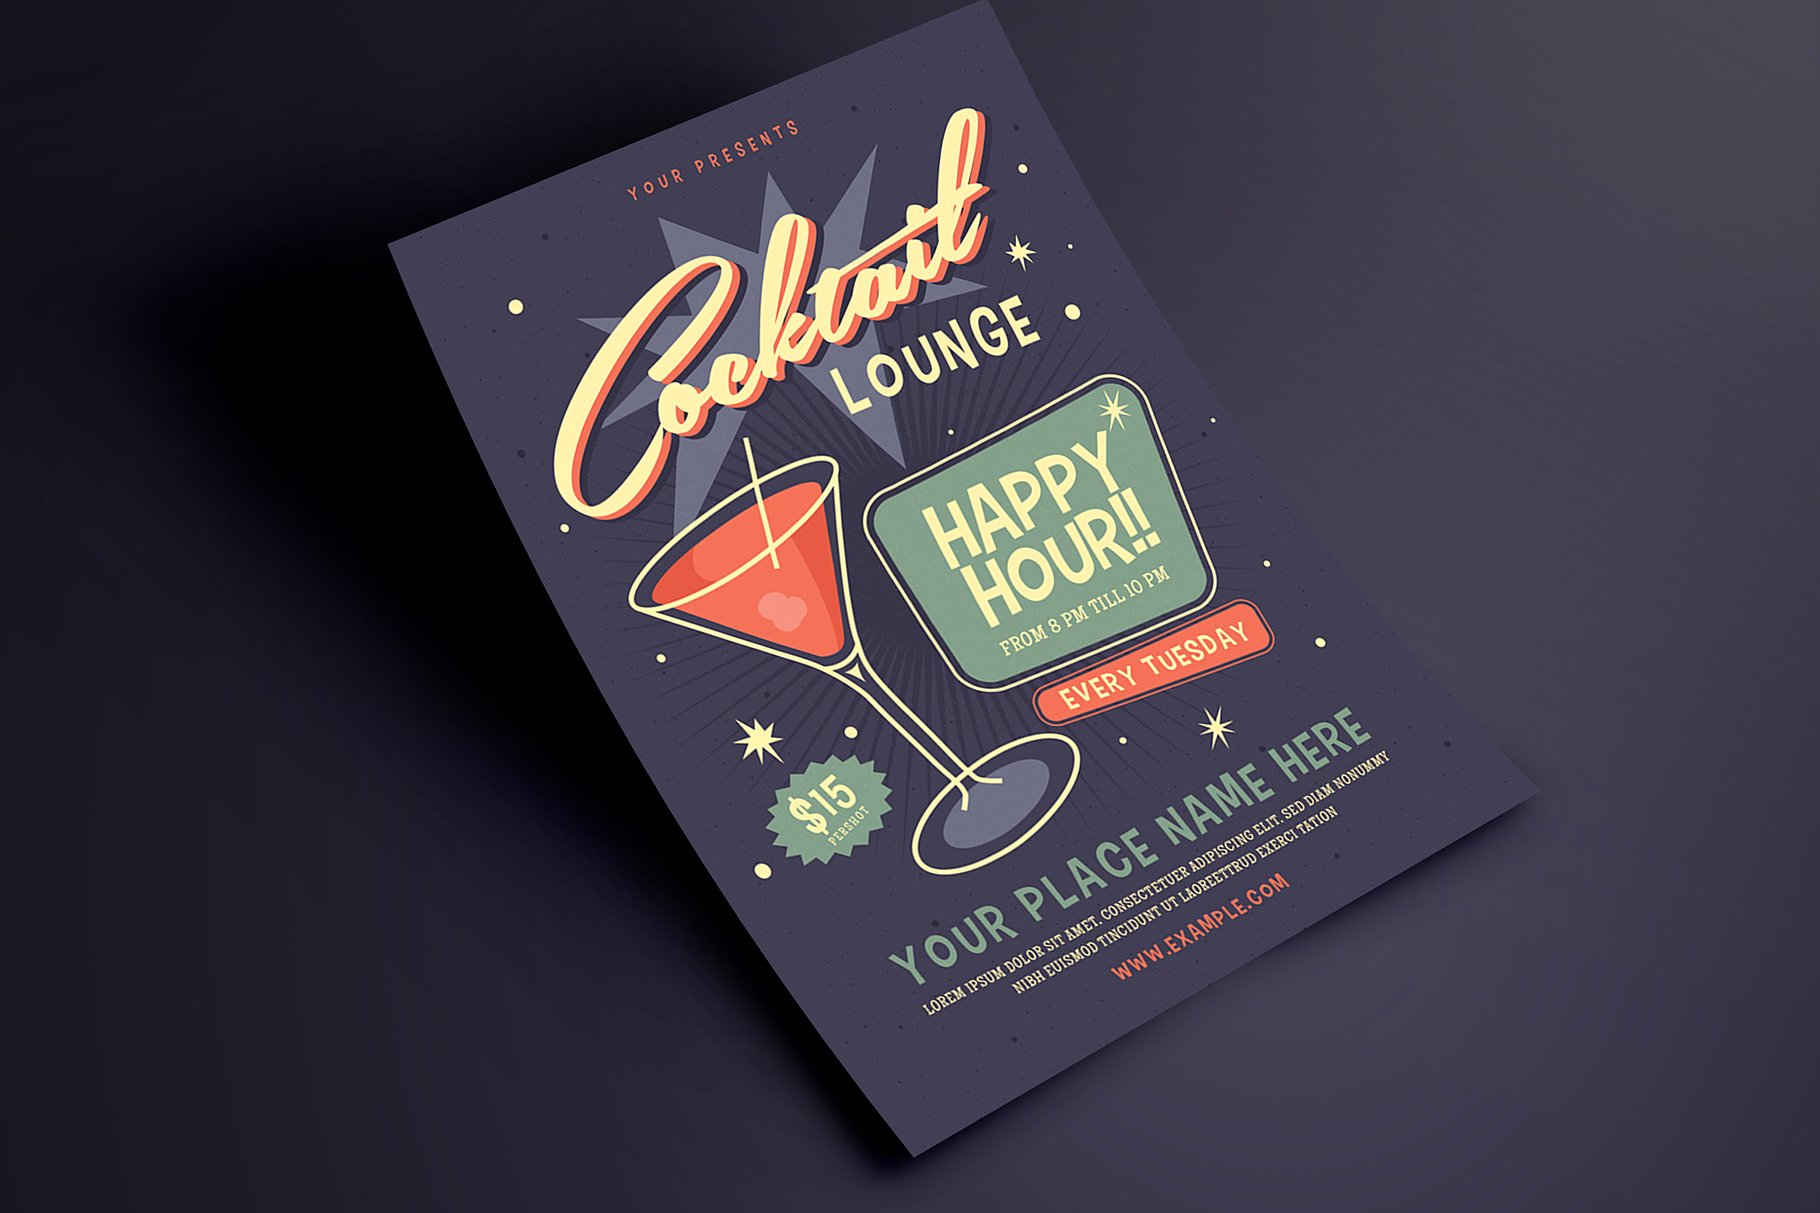 复古设计风格鸡尾酒酒会活动海报设计模板 Retro Cocktail Event Flyer插图(2)